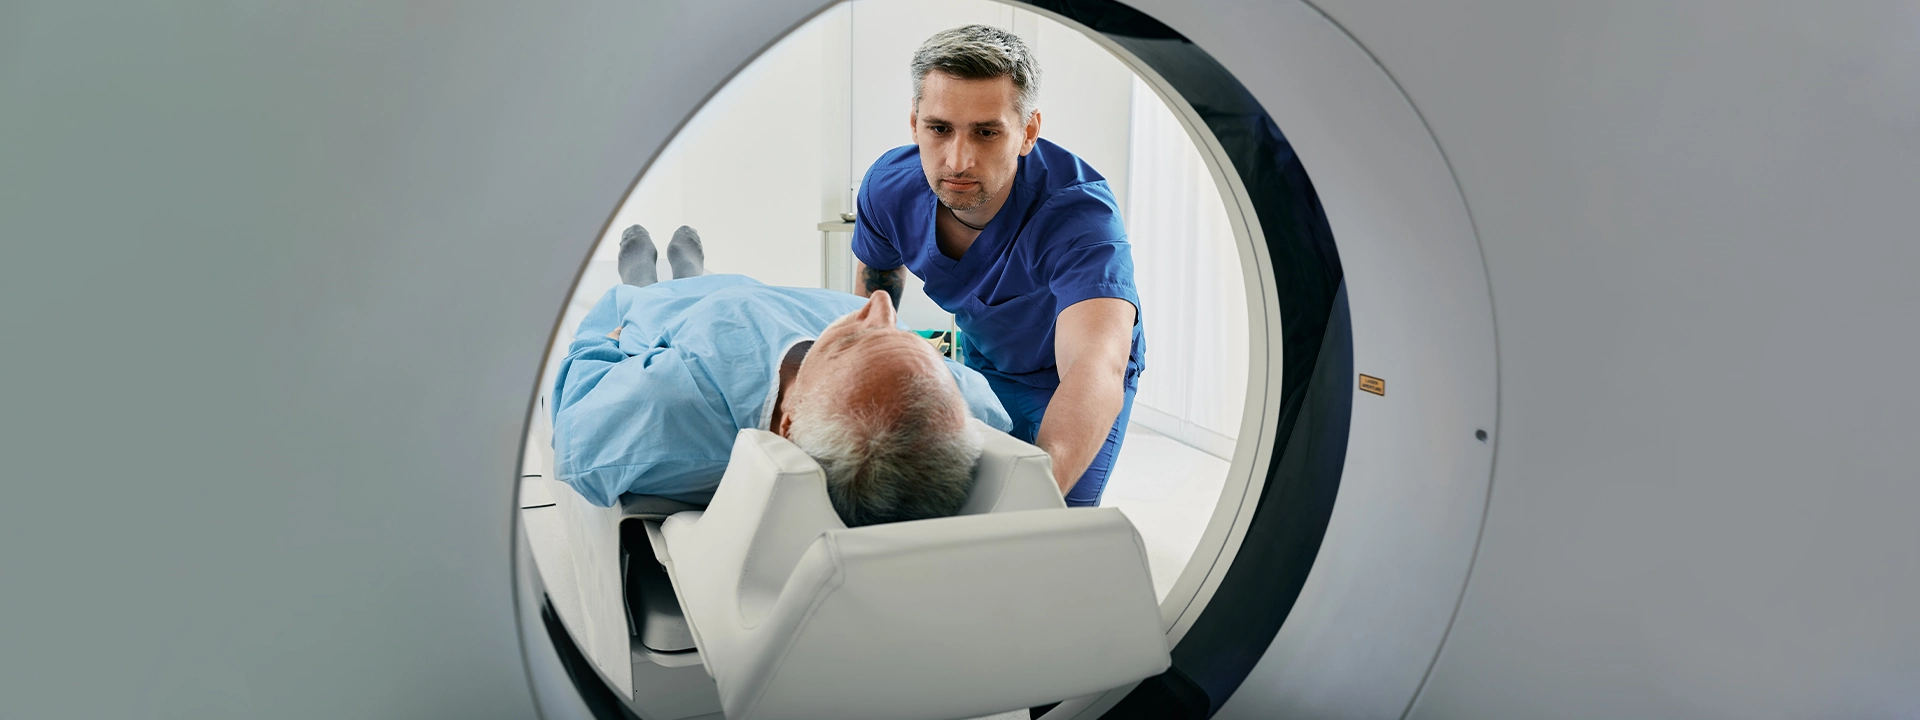 МРТ: внутренний мир — на томографических снимках